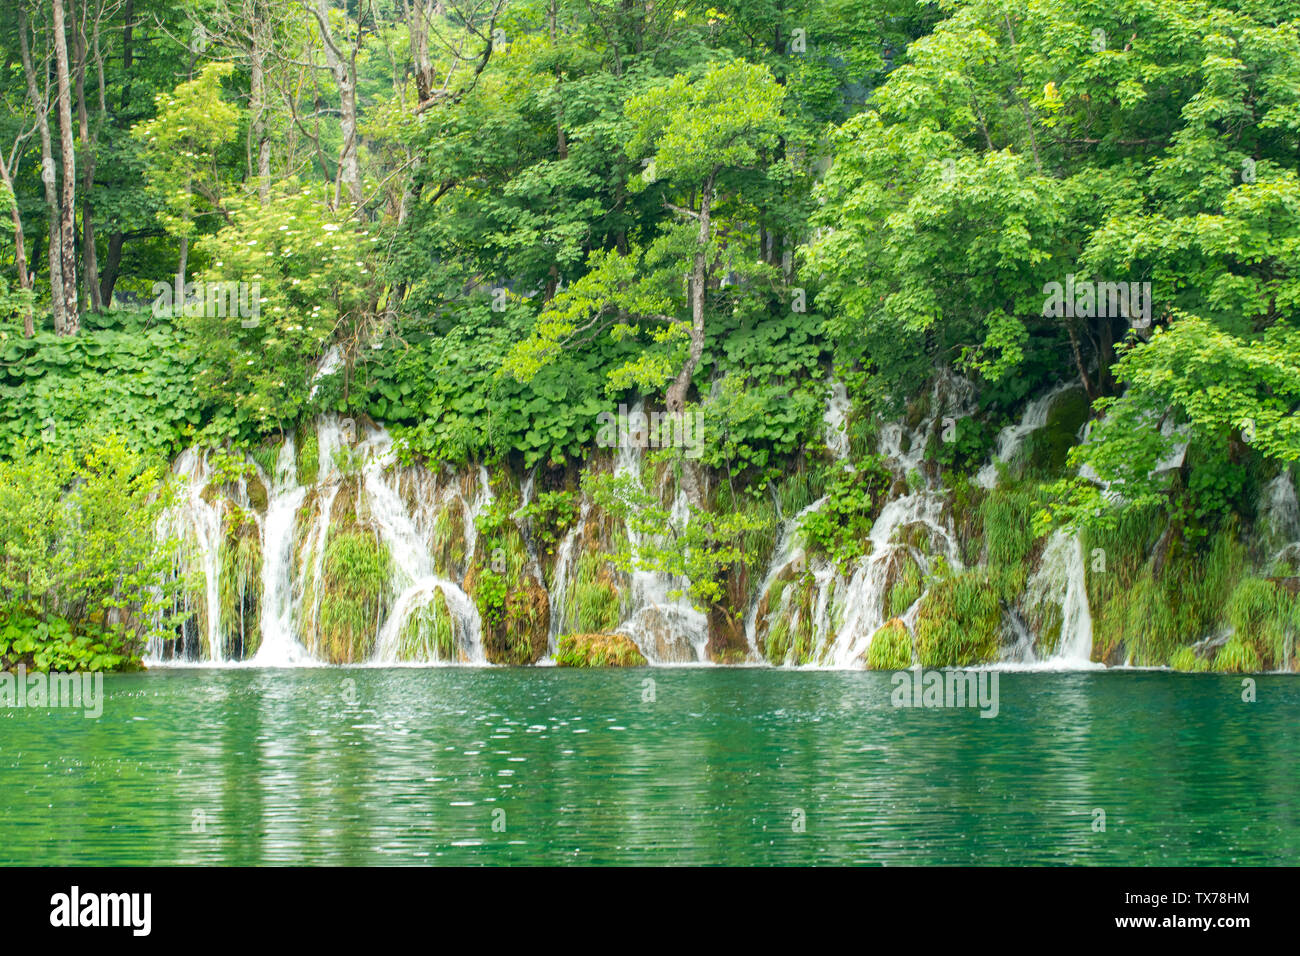 Cascades de Malo jezero, le parc national des Lacs de Plitvice, Croatie Banque D'Images